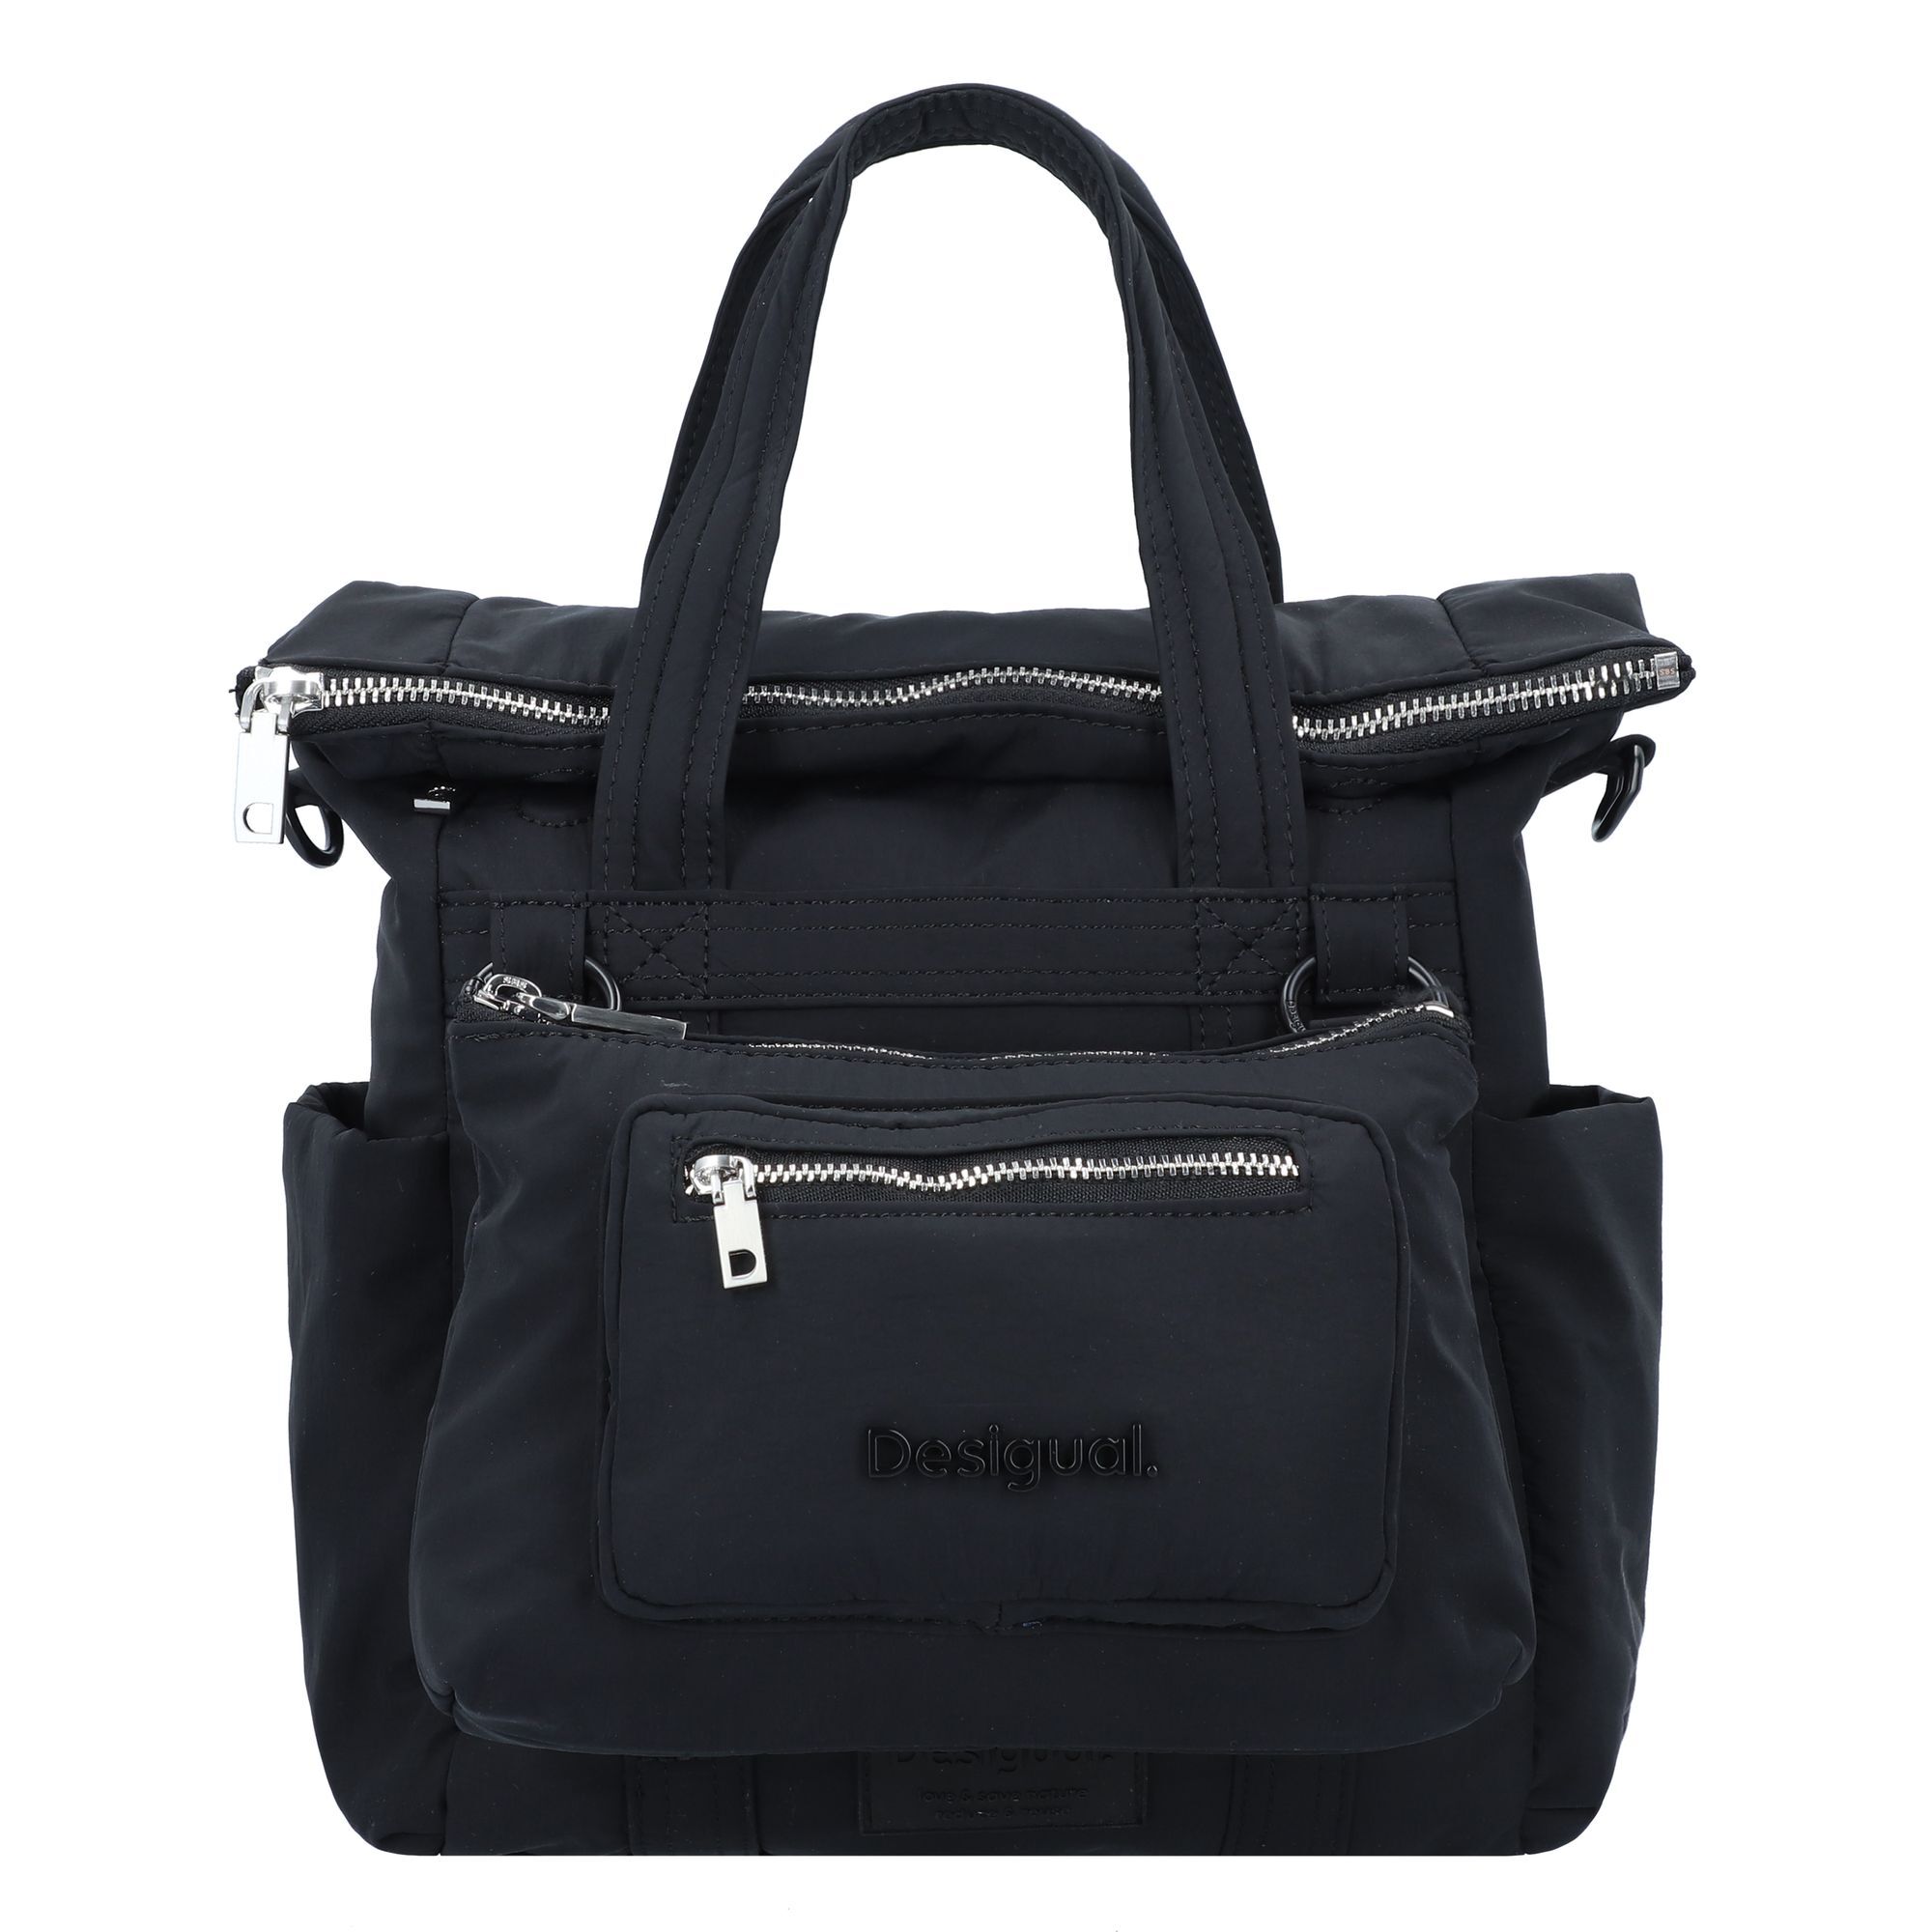 Рюкзак Desigual Modular Voyager City 30 cm, черный рюкзак outventure voyager 30 л черный